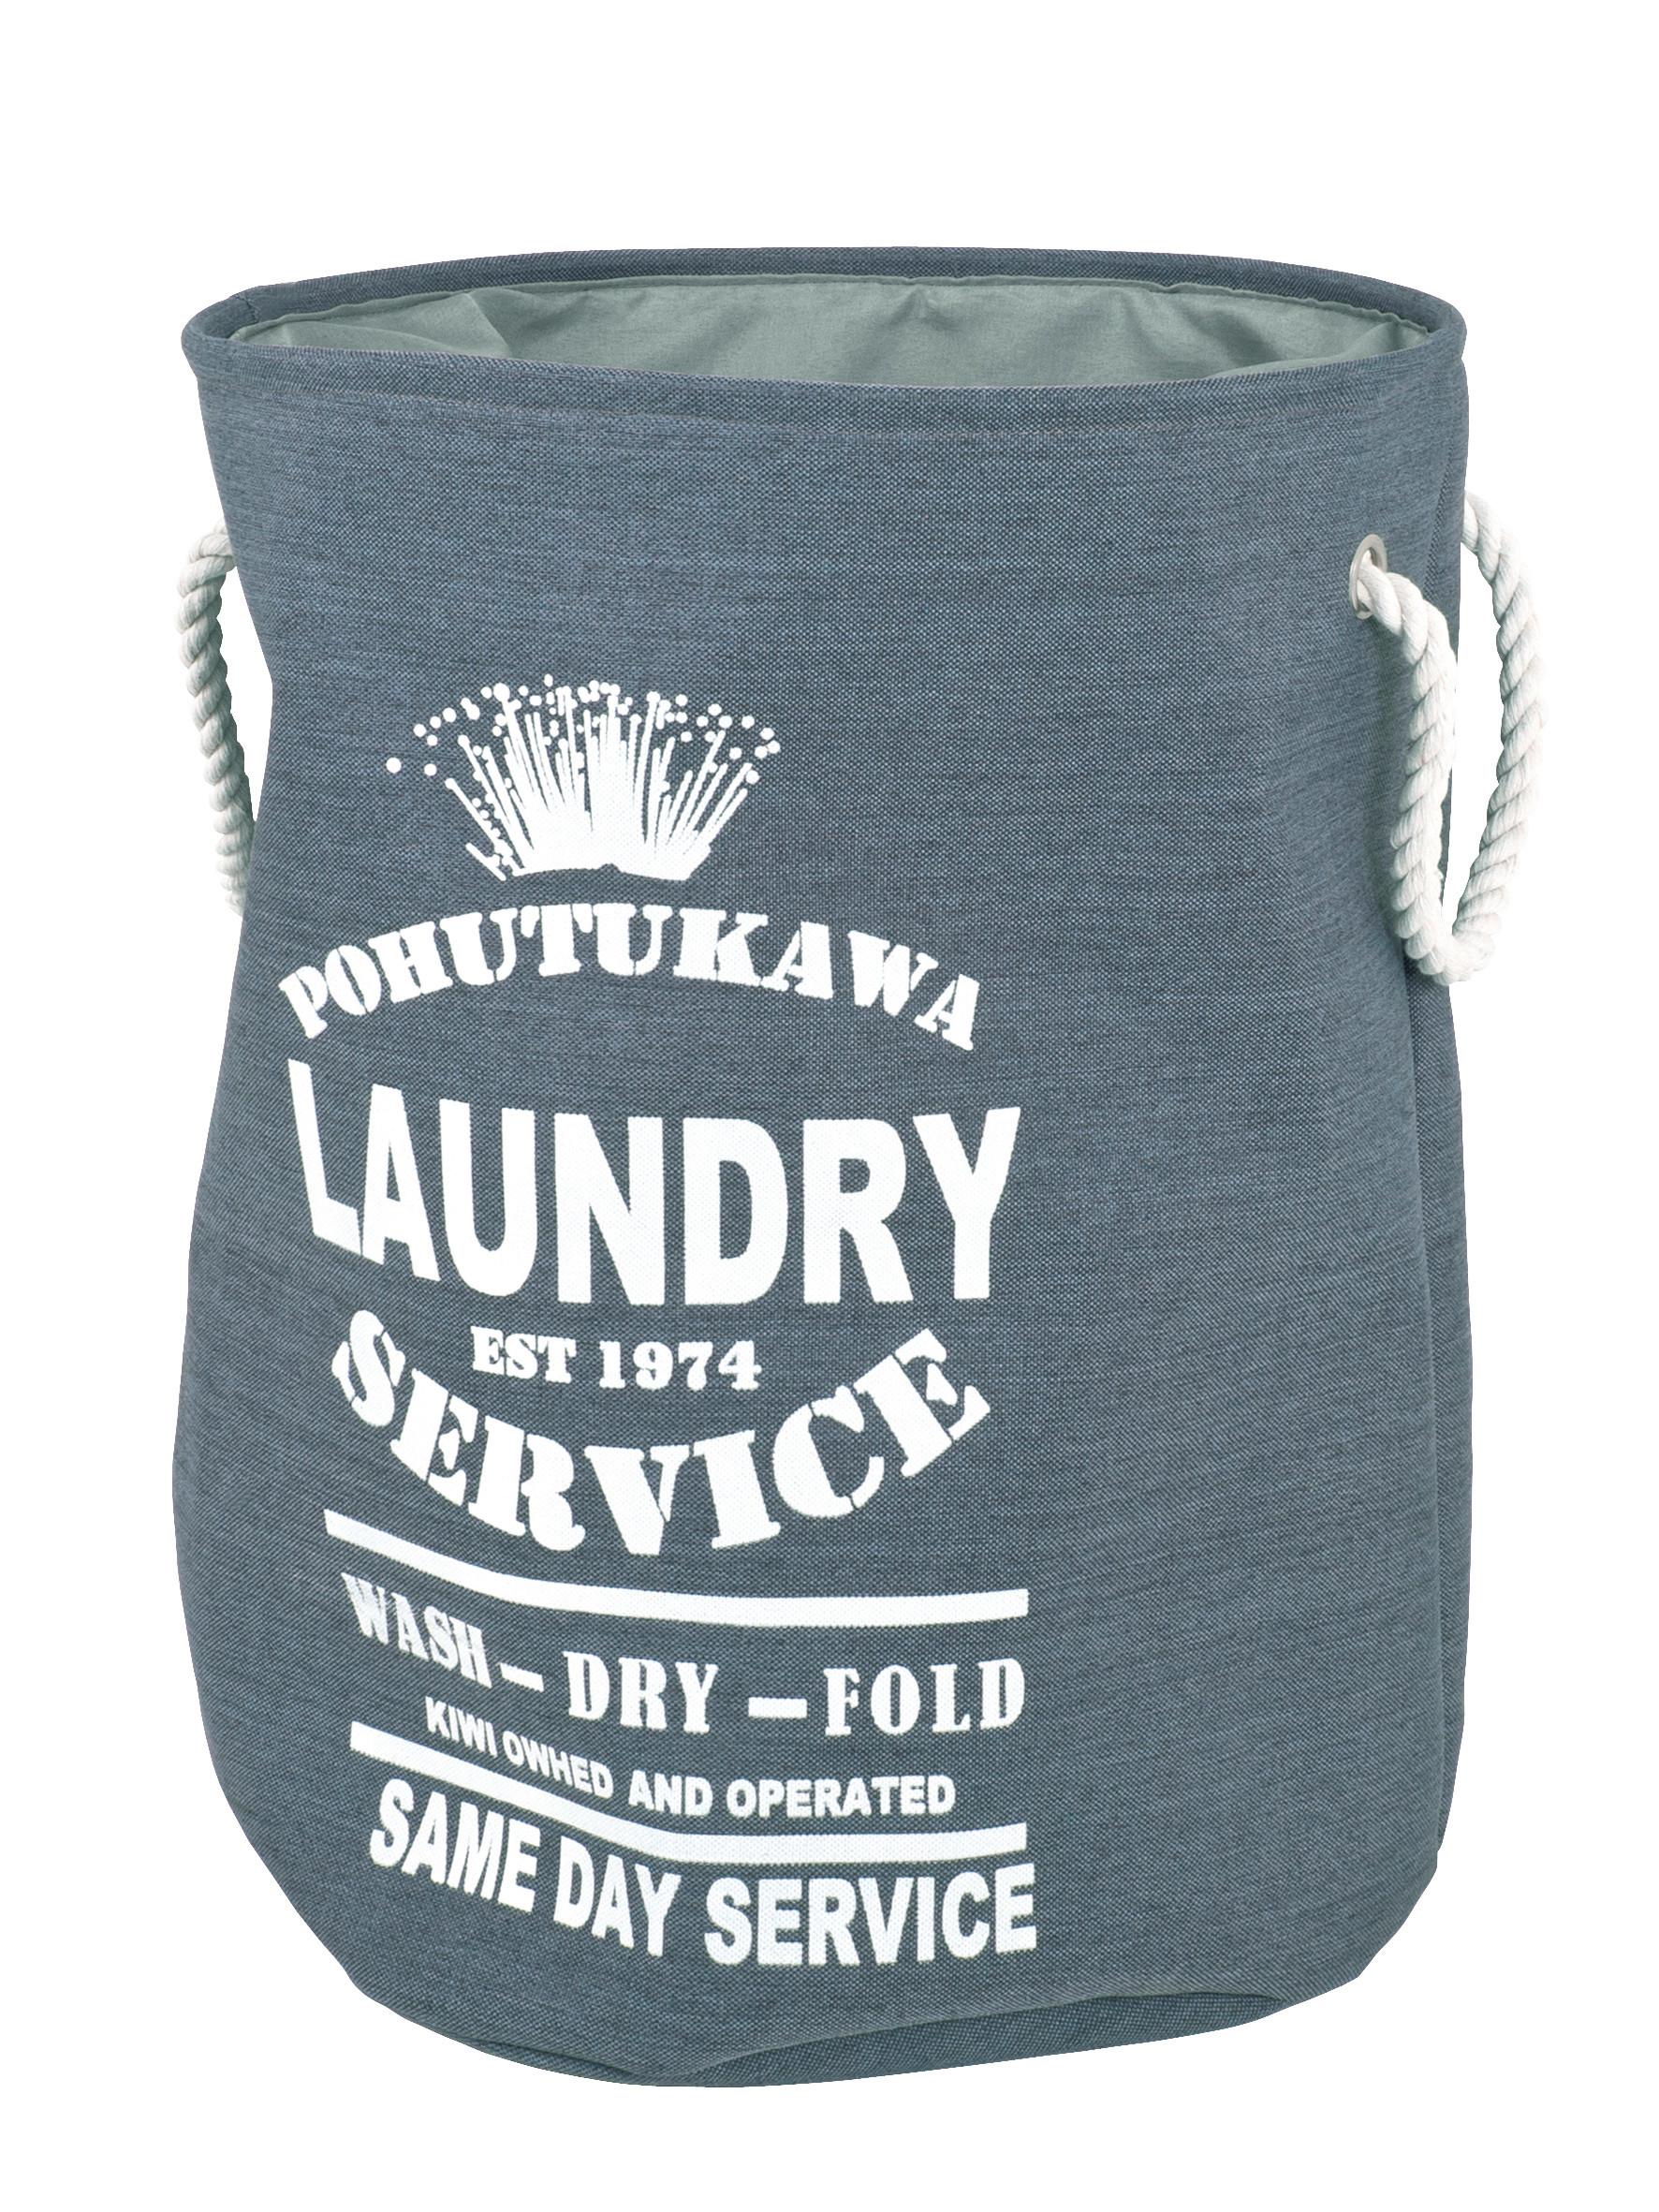 Wäschetonne Laundry 5 in Grau - Weiß/Grau, LIFESTYLE, Textil (42/54cm) - Modern Living